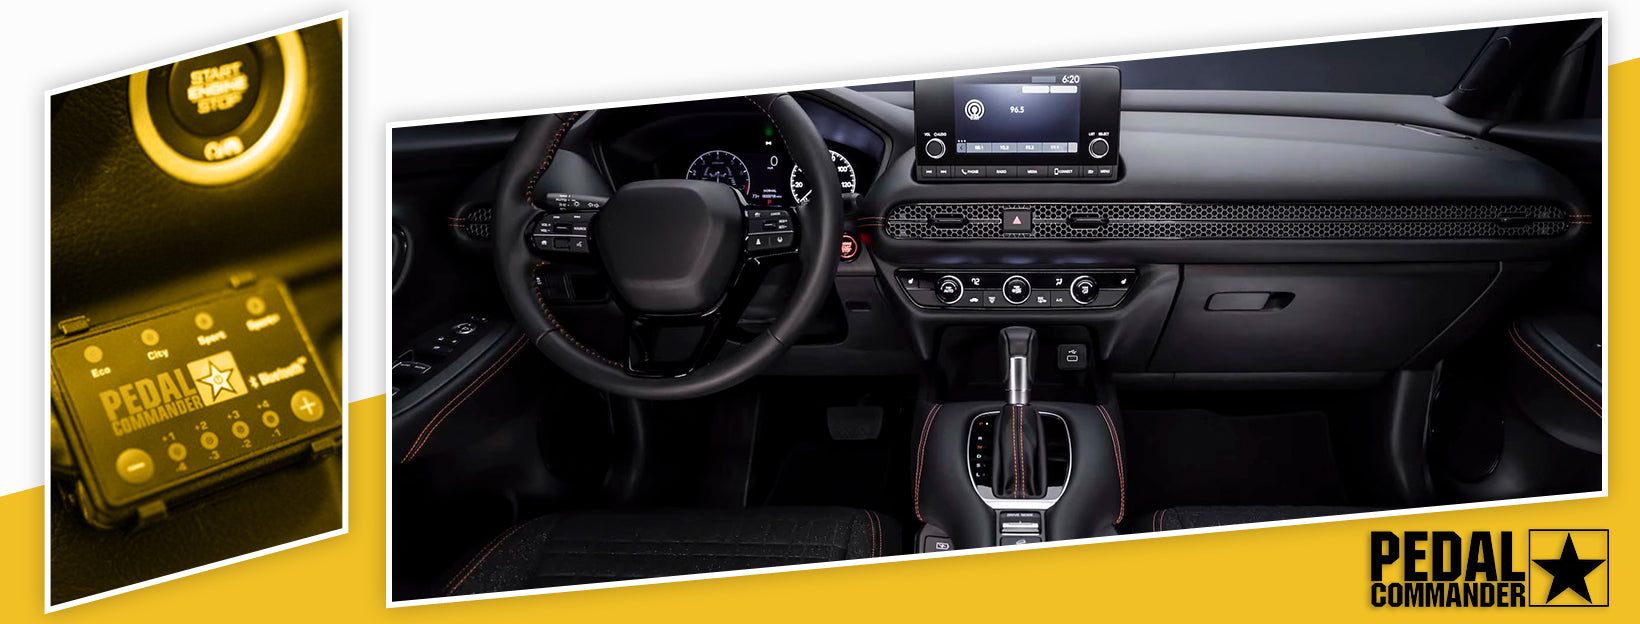 Pedal Commander for Honda HRV - interior